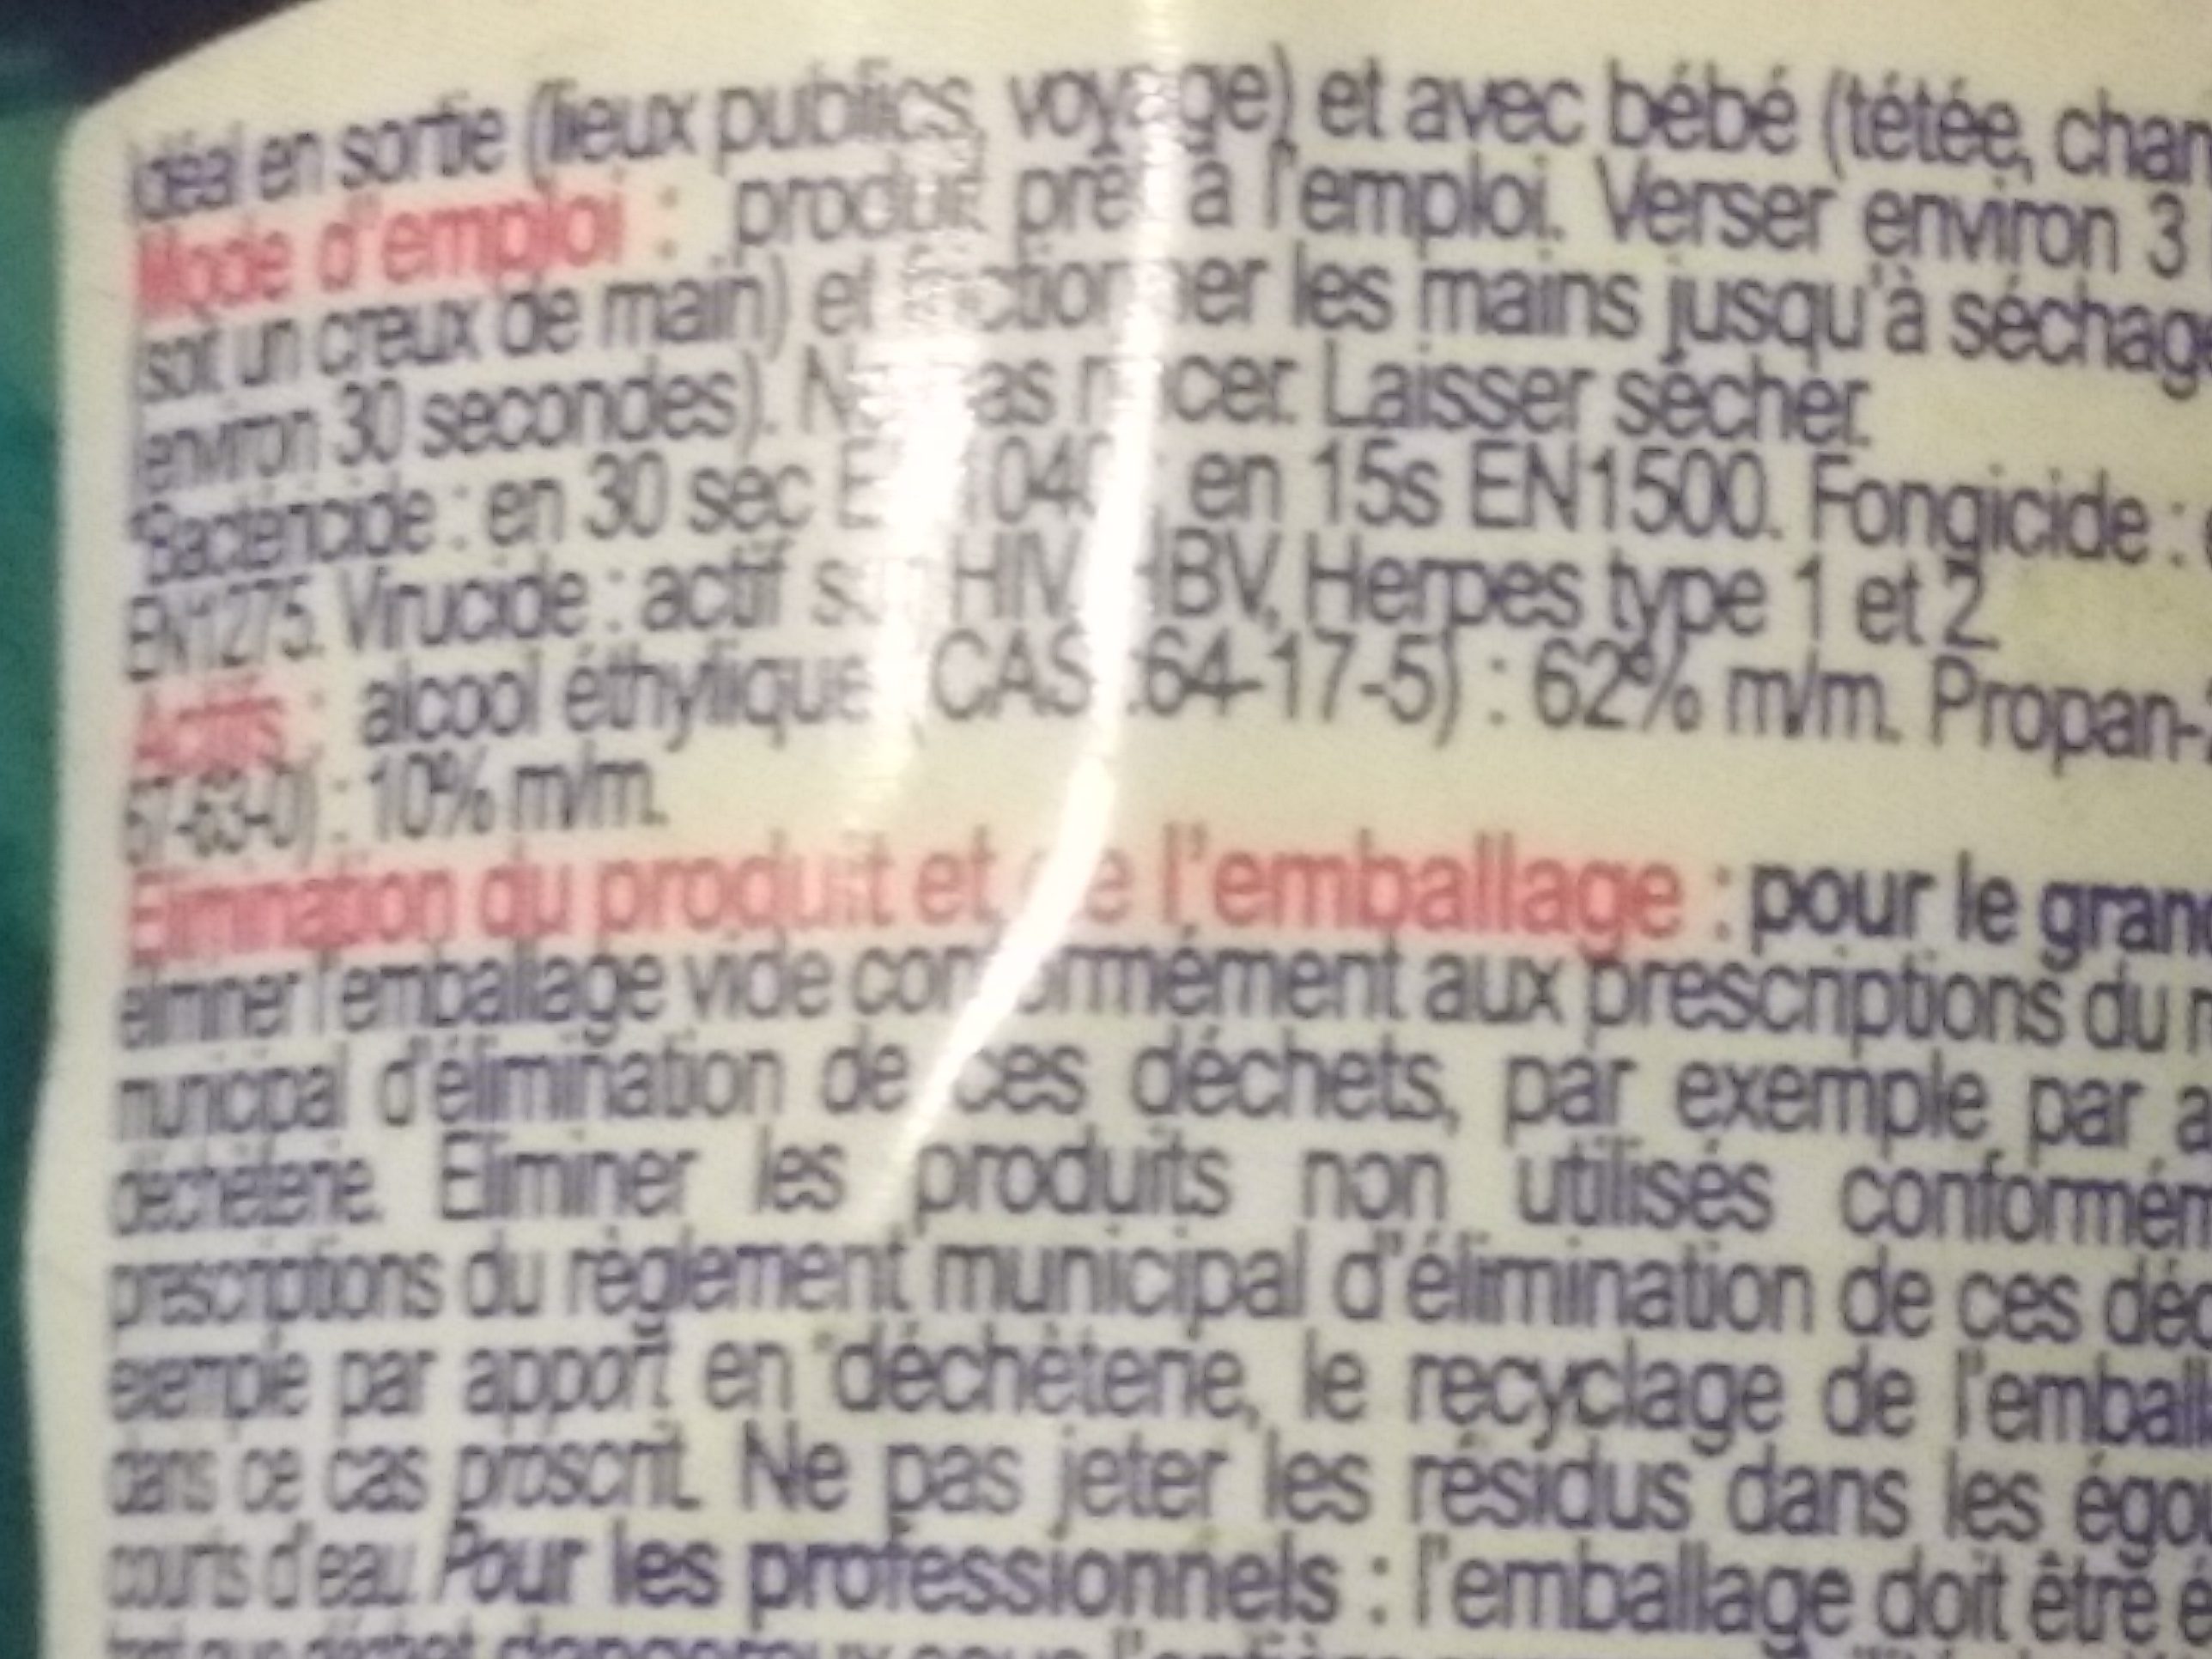 gel mains desinfectant - Ingredients - fr